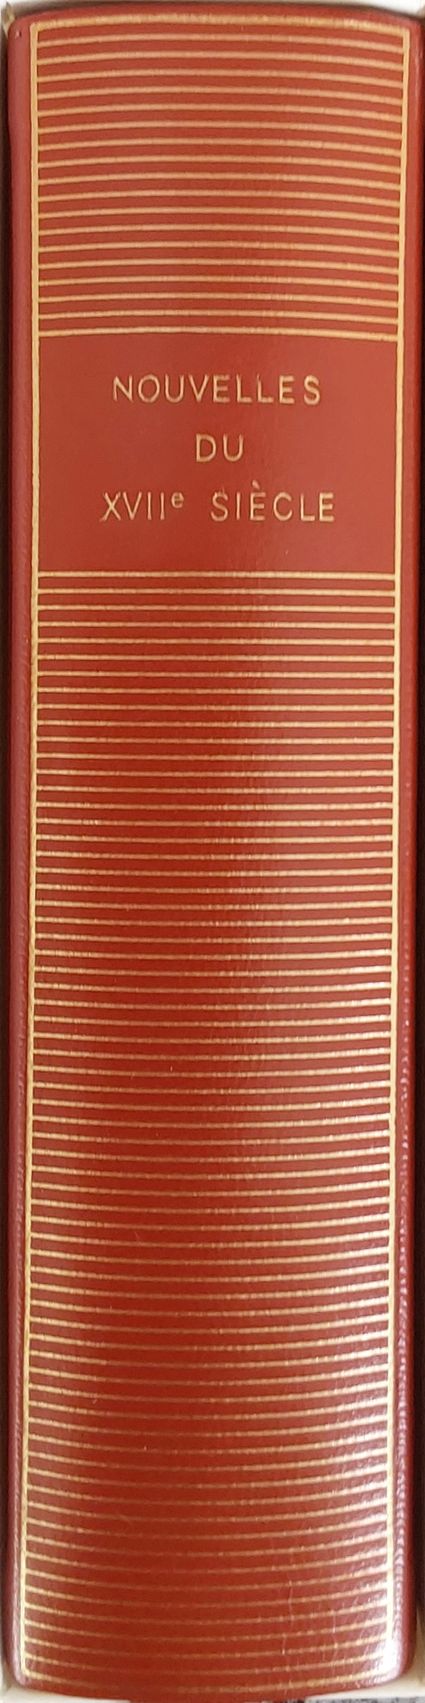 Volume 435 de Collectifs du XVIIeme dans la Bibliothèque de la Pléiade.